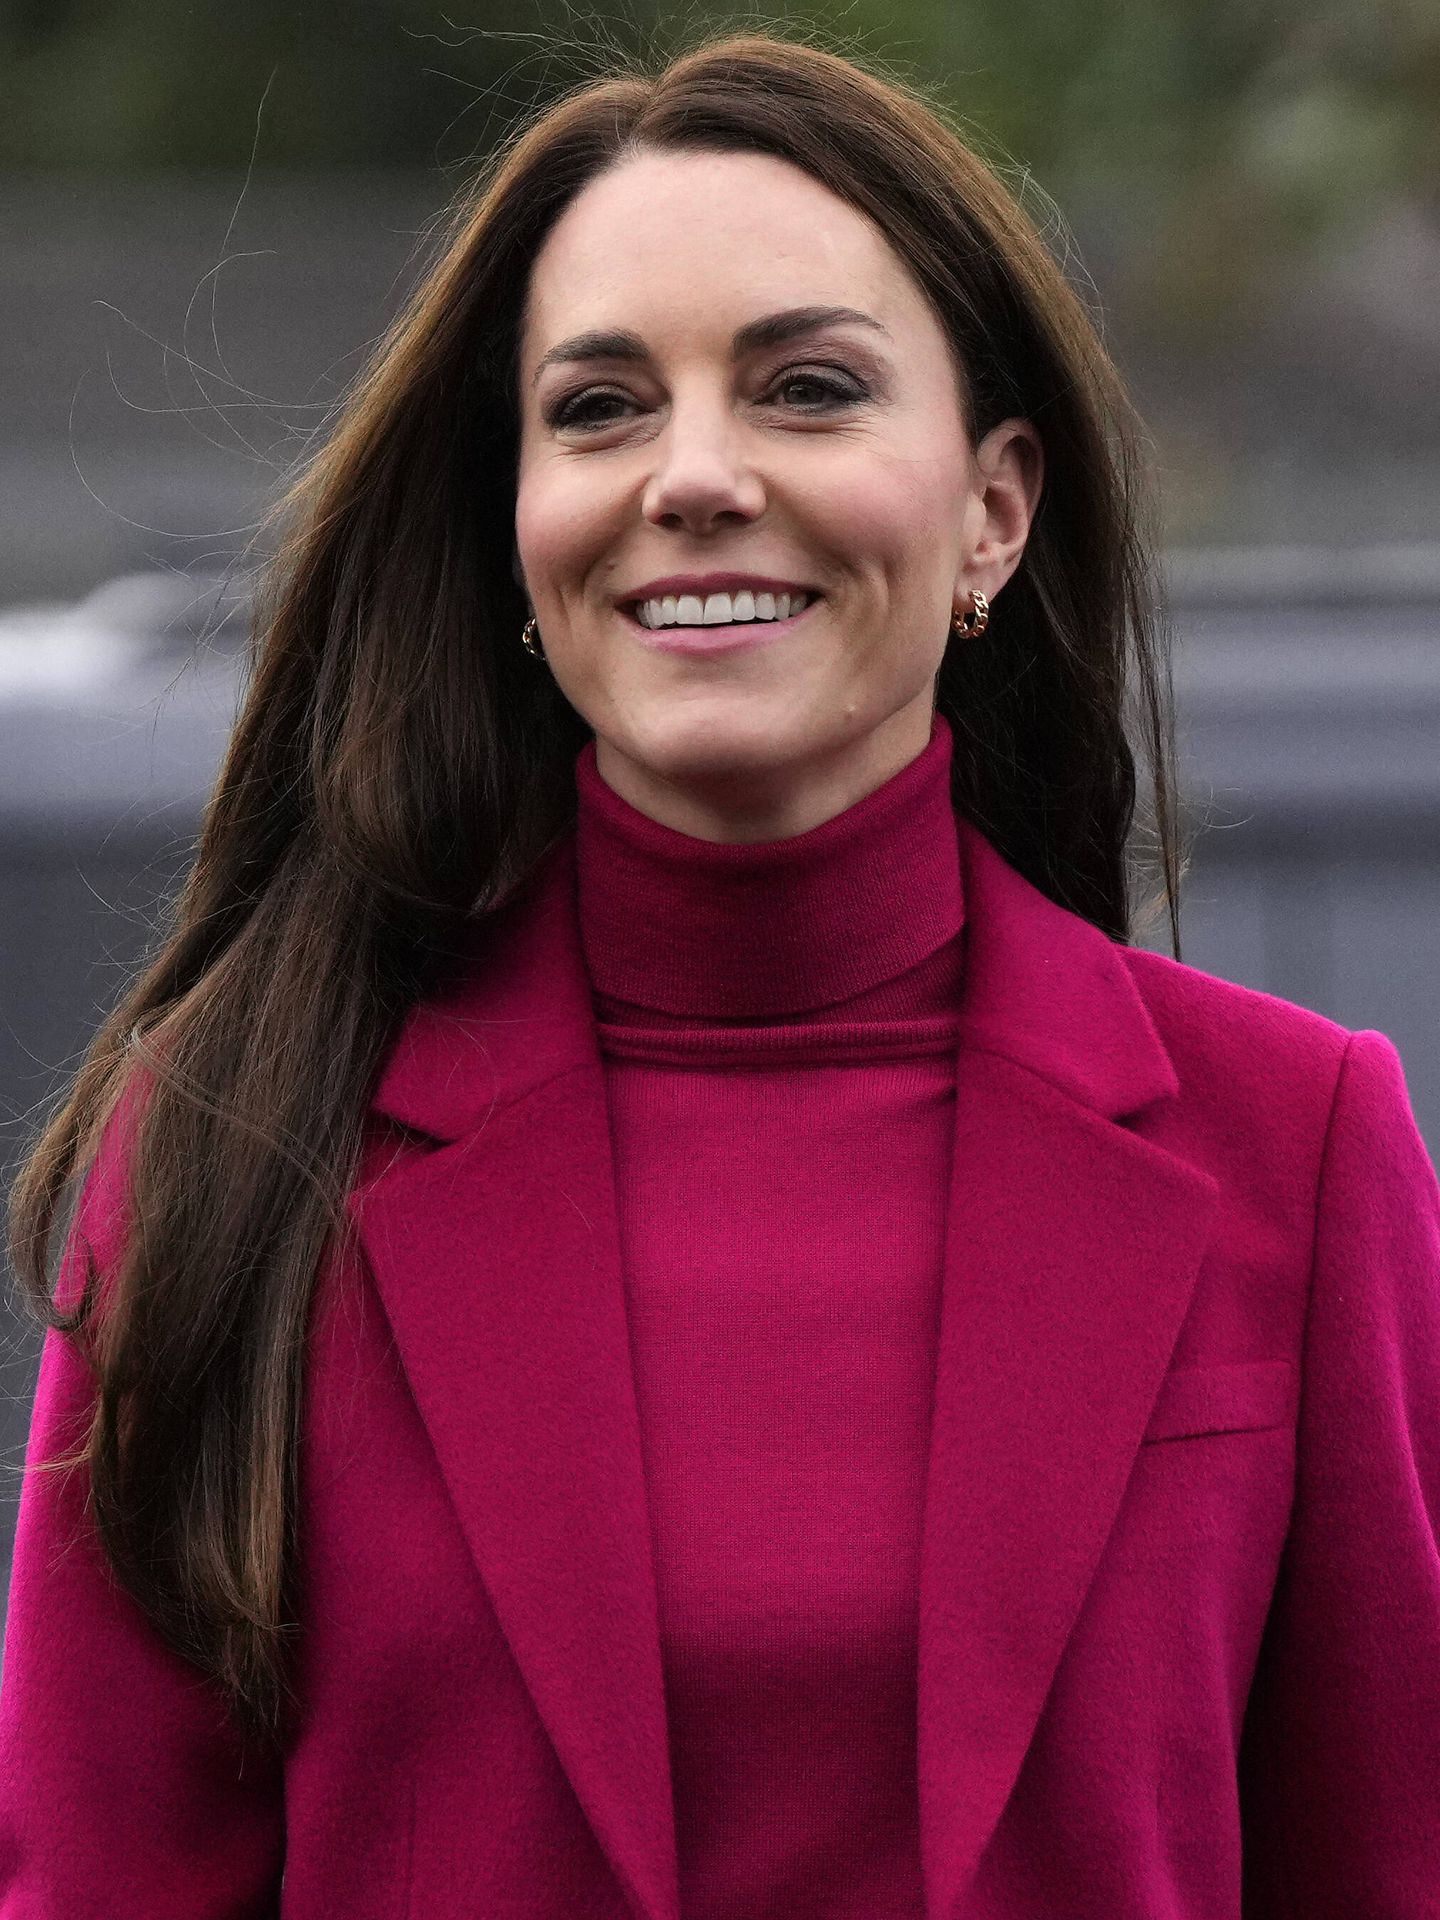 Detalle frontal de la nueva coloración de Kate Middleton. (Getty/Alastair Grant)